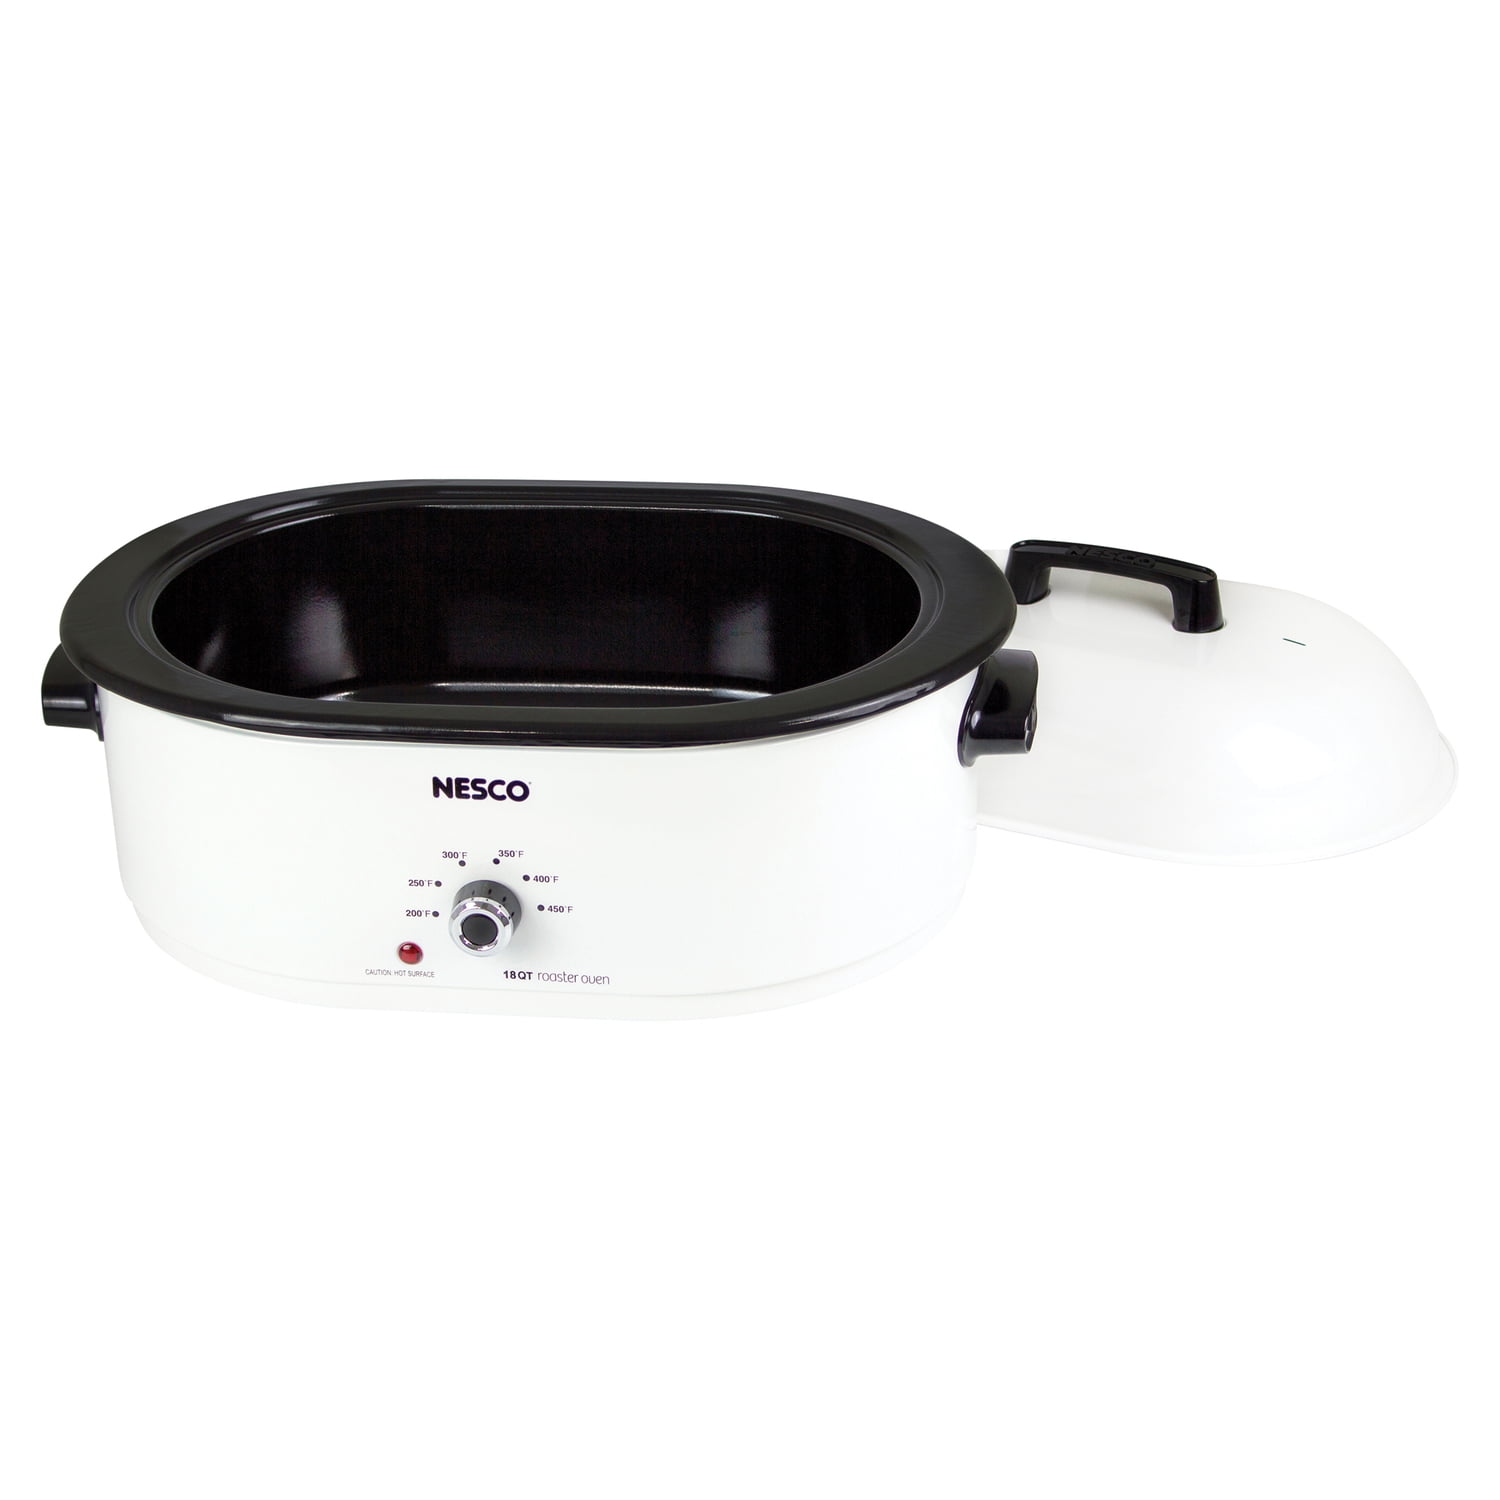  Nesco MWR18-14 Roaster Oven, 18 Quart, White: Home & Kitchen